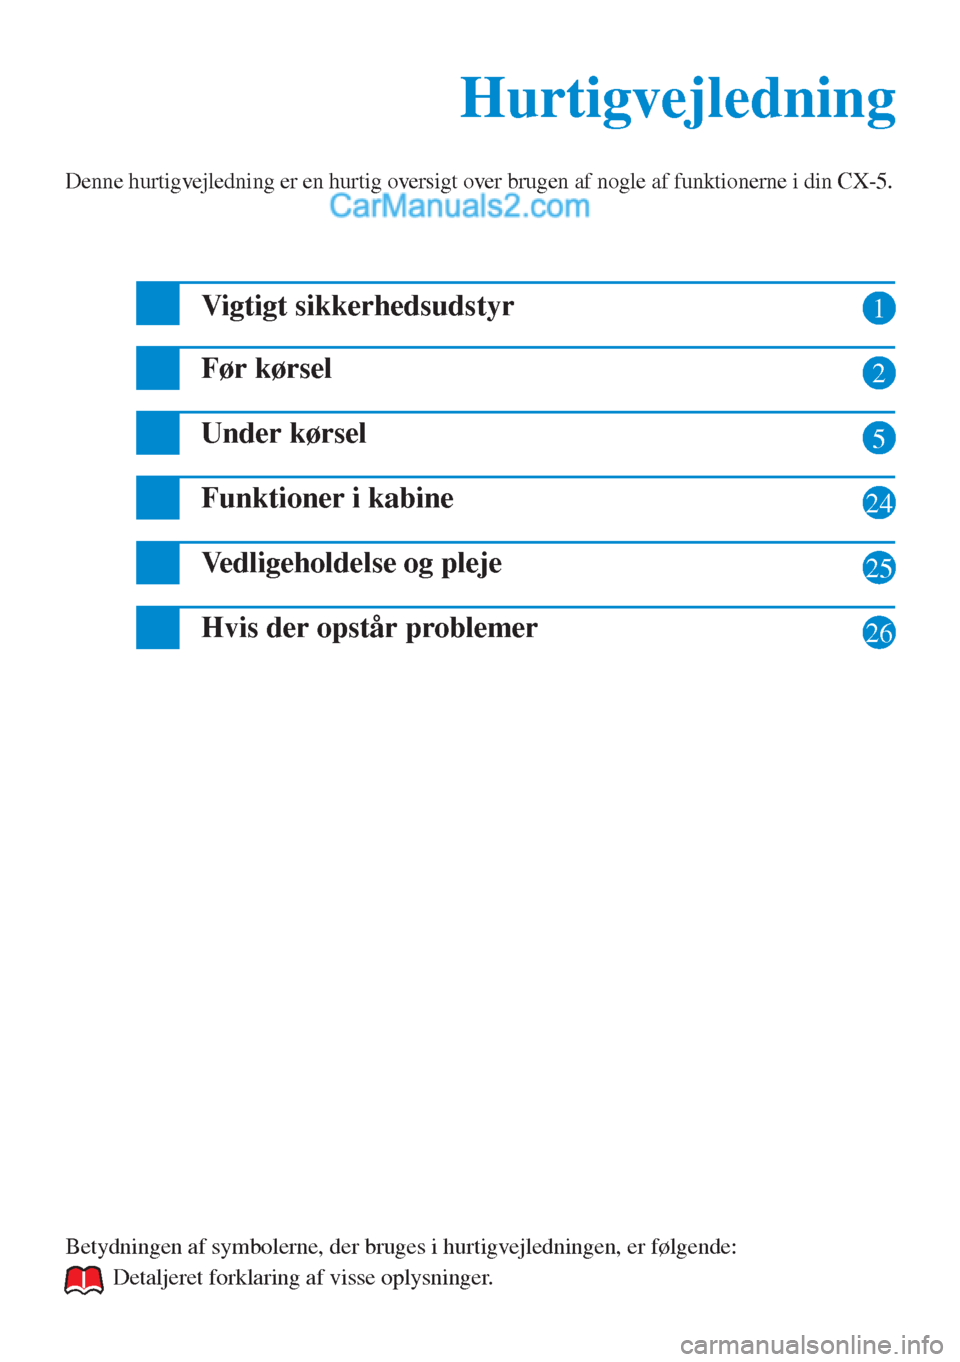 MAZDA MODEL CX-5 2015  Hurtigvejledning (in Danish) 1
2
5
24
25
Hurtigvejledning Hurtigvejledning
Denne hurtigvejledning er en hurtig oversigt over brugen af nogle af funktionerne i din CX-5.
Vigtigt sikkerhedsudstyr
Før kørsel
Under kørsel
Funktion